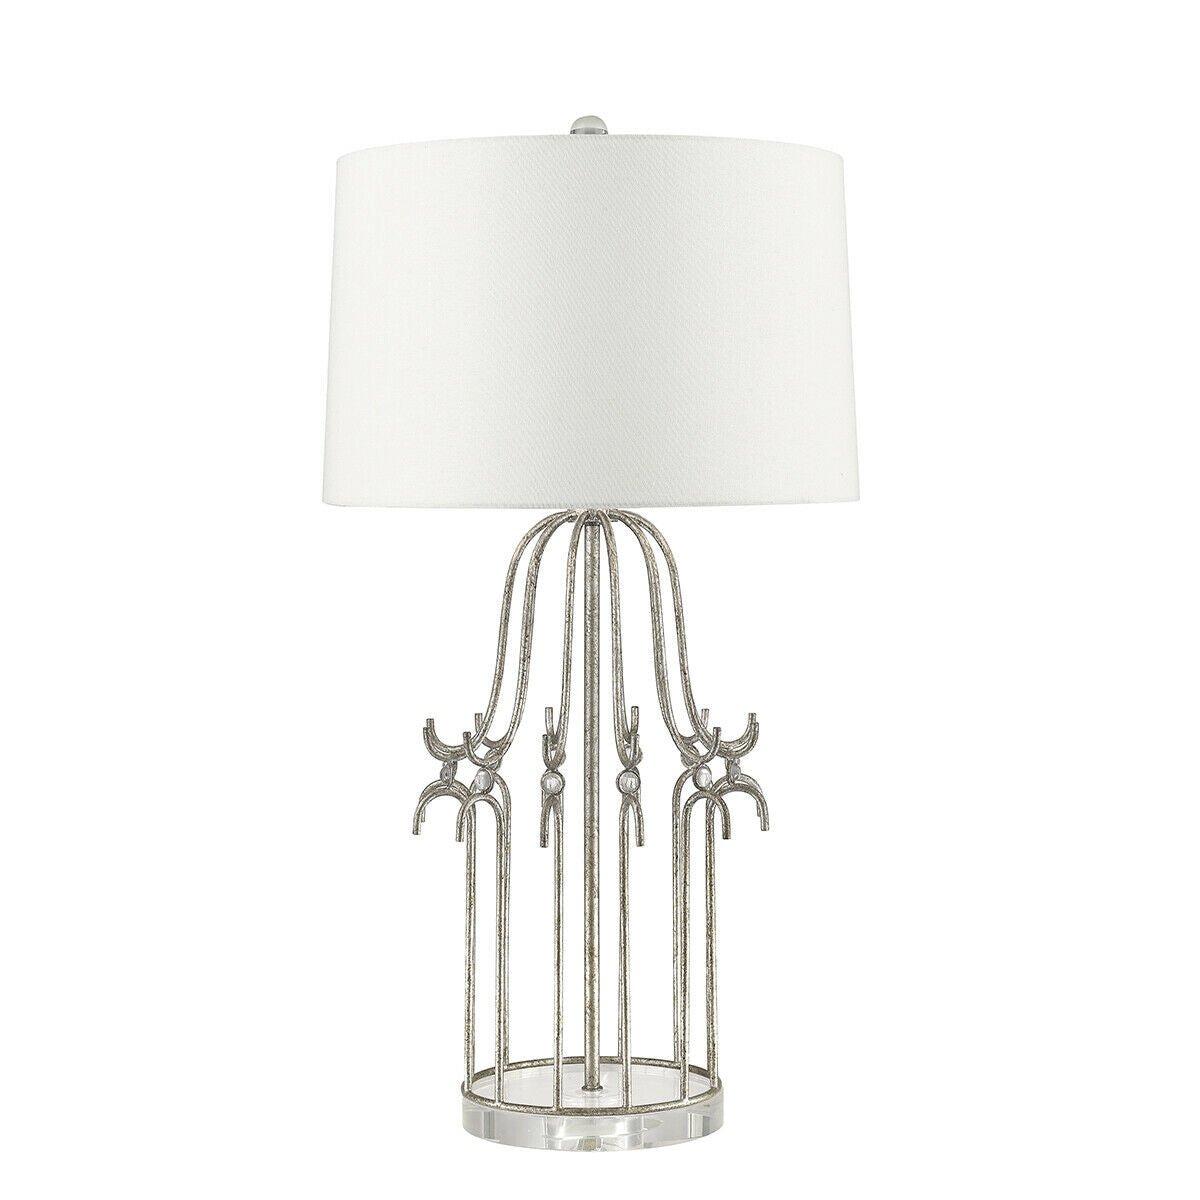 Table Lamp Cream Shade Distressed Silver LED E27 100W Single Bulb